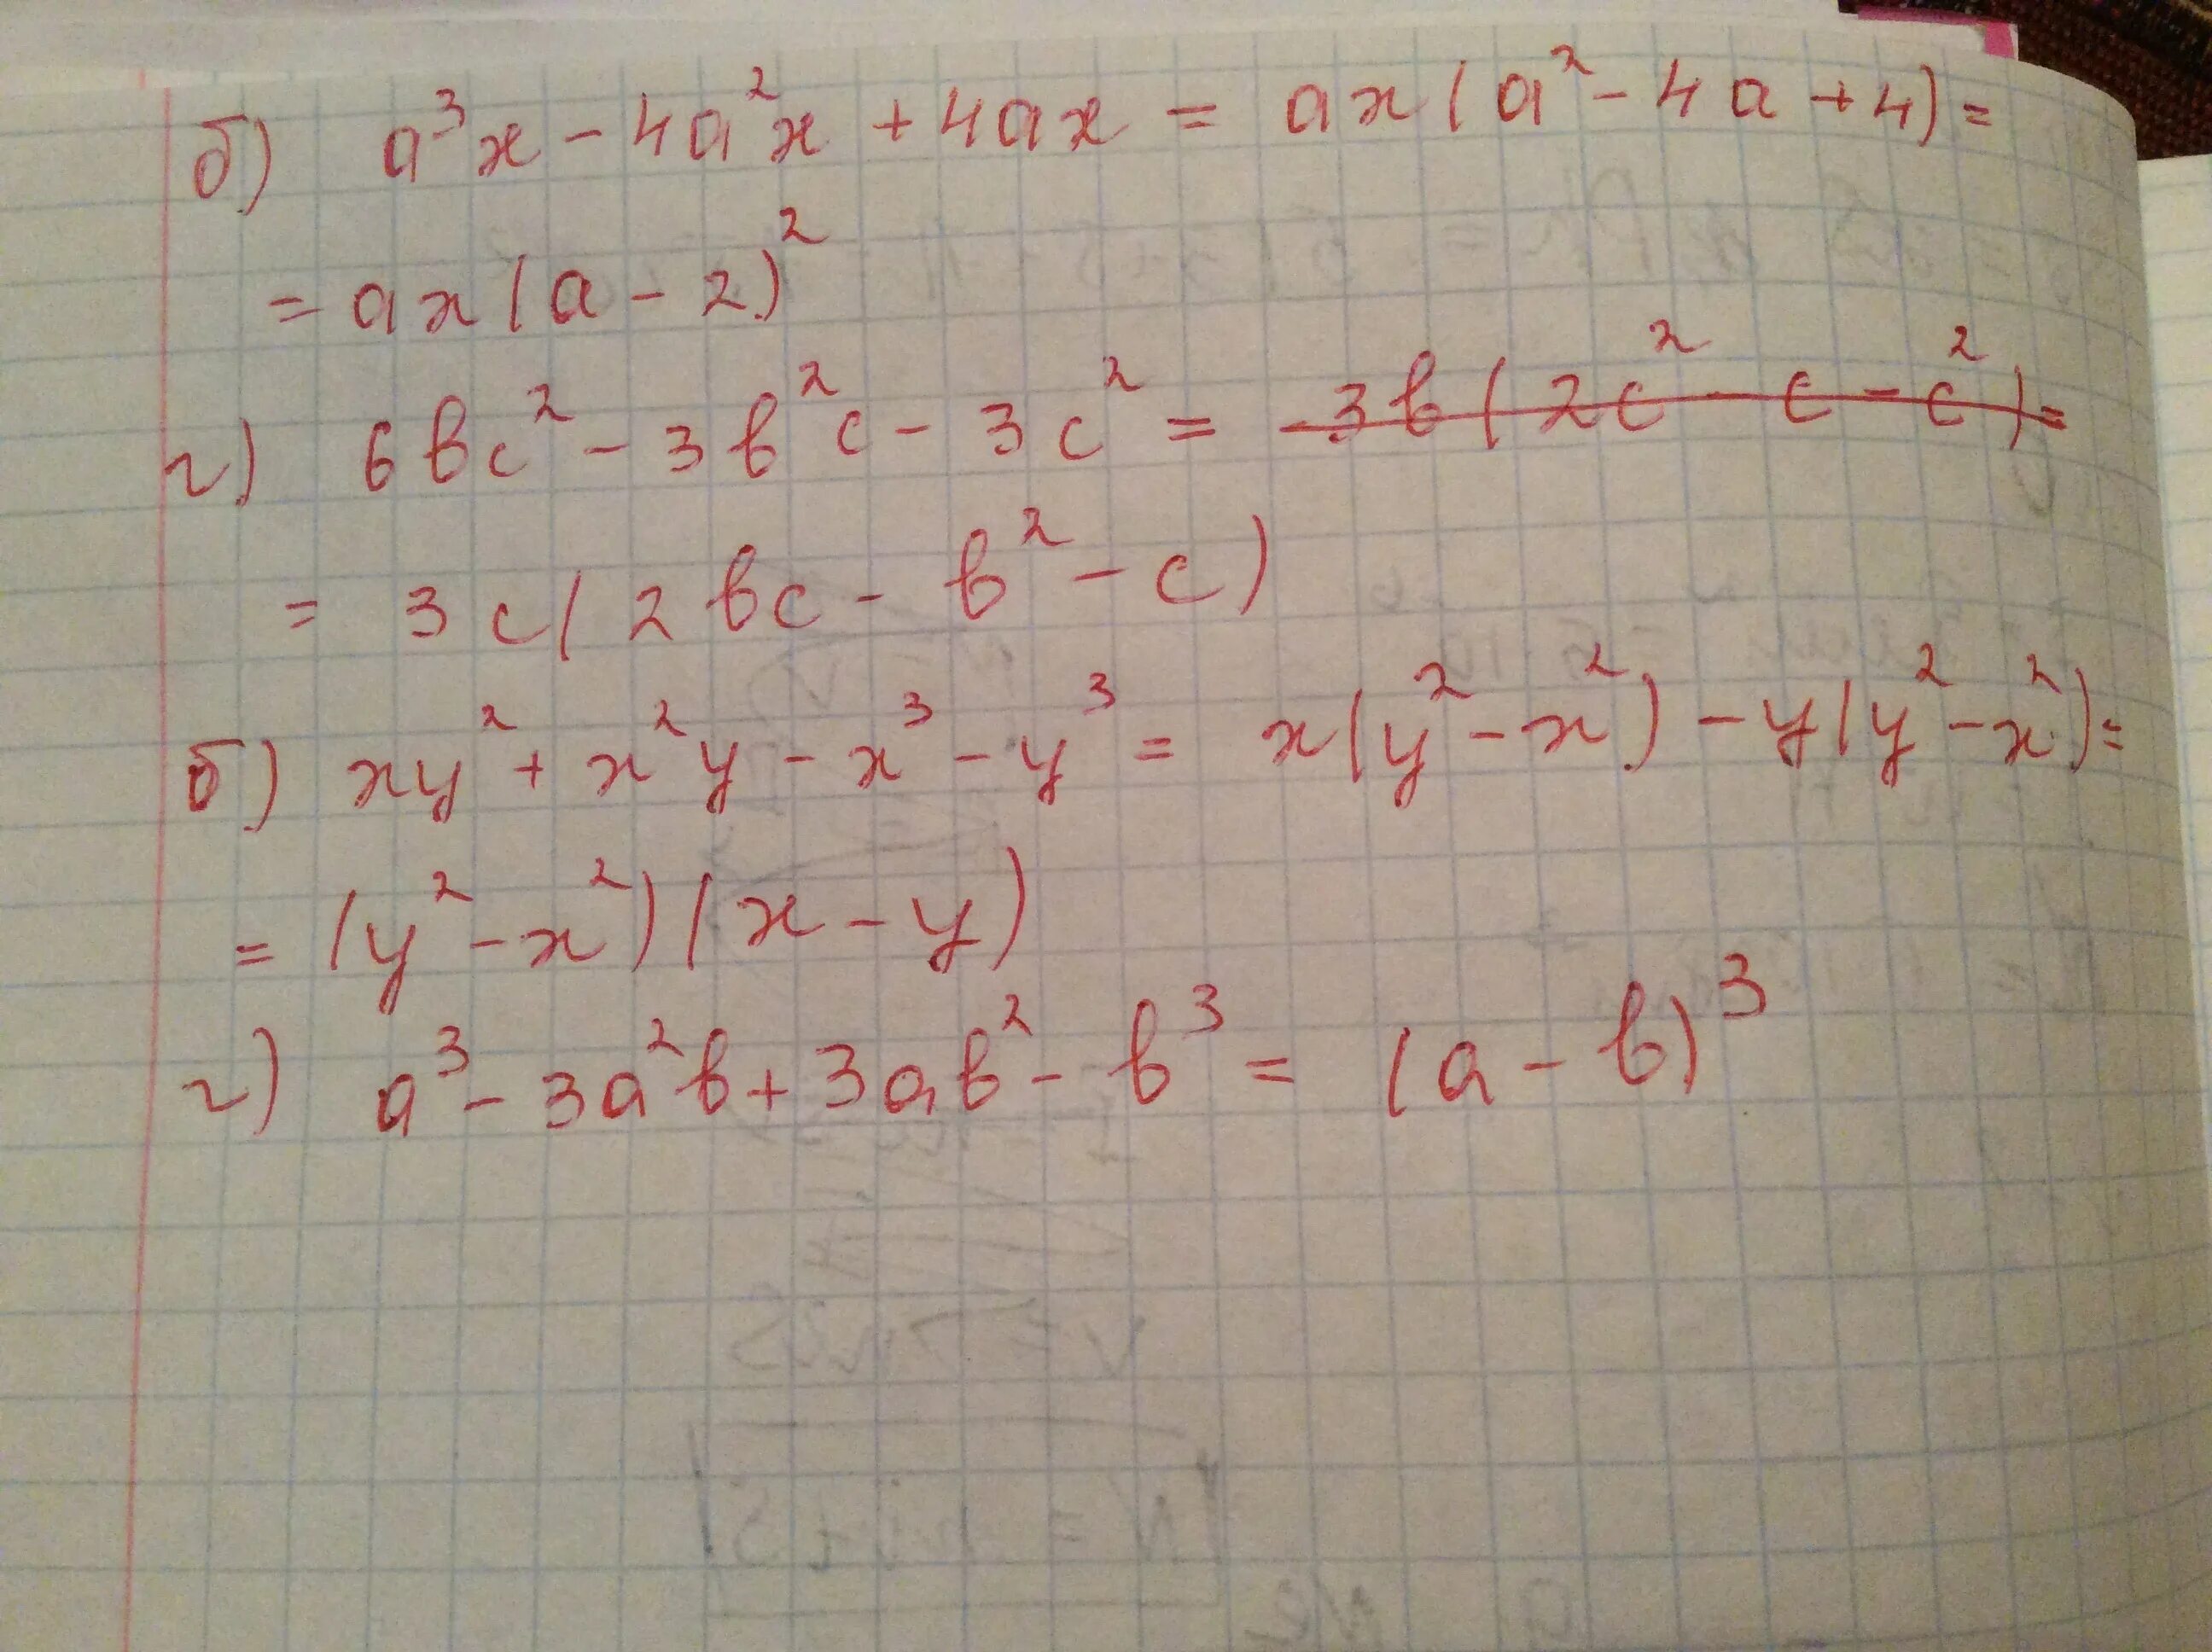 2 2x a2 4ax2 a 0. A*B*C 3x2y -0,5x3y2 2xy4. 2x^2-8 б 3/х-2. A2 4a 2 x2 AX 6 X три решения. Система x + 2y=1 x2 -XY-2x2=1.